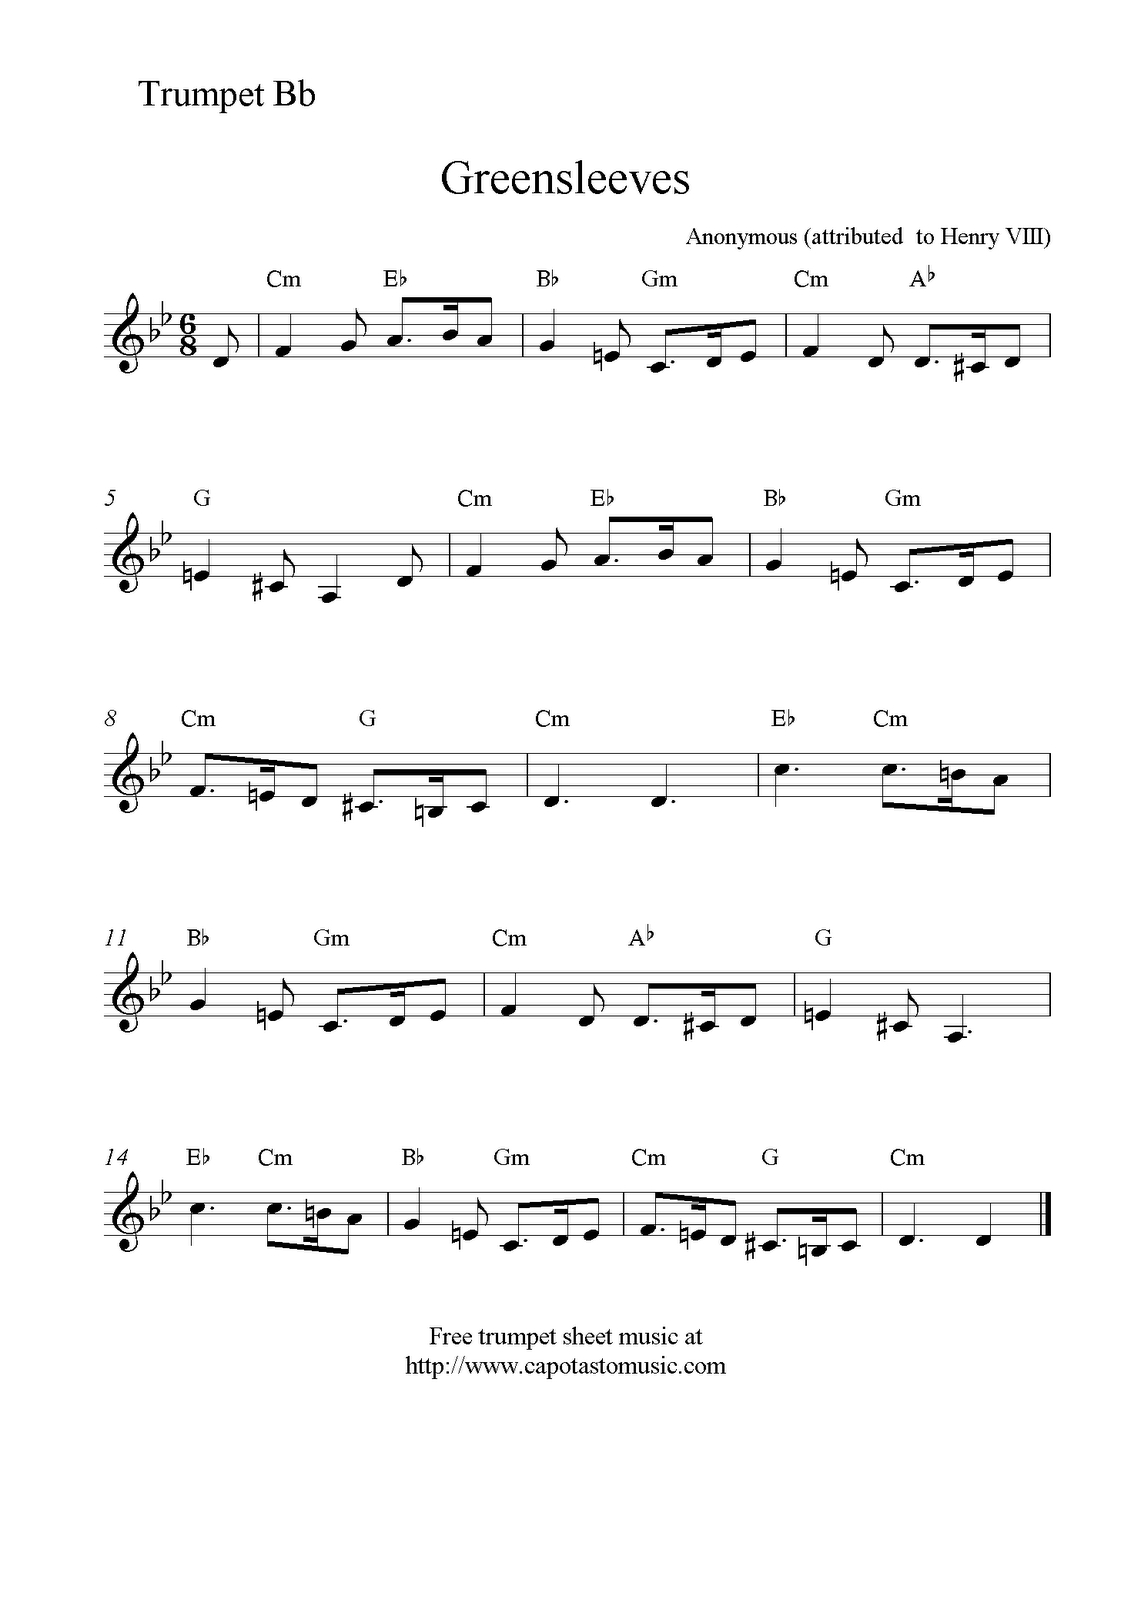 Free Sheet Music Scores: Greensleeves, Free Trumpet Sheet Music - Free Printable Sheet Music For Trumpet